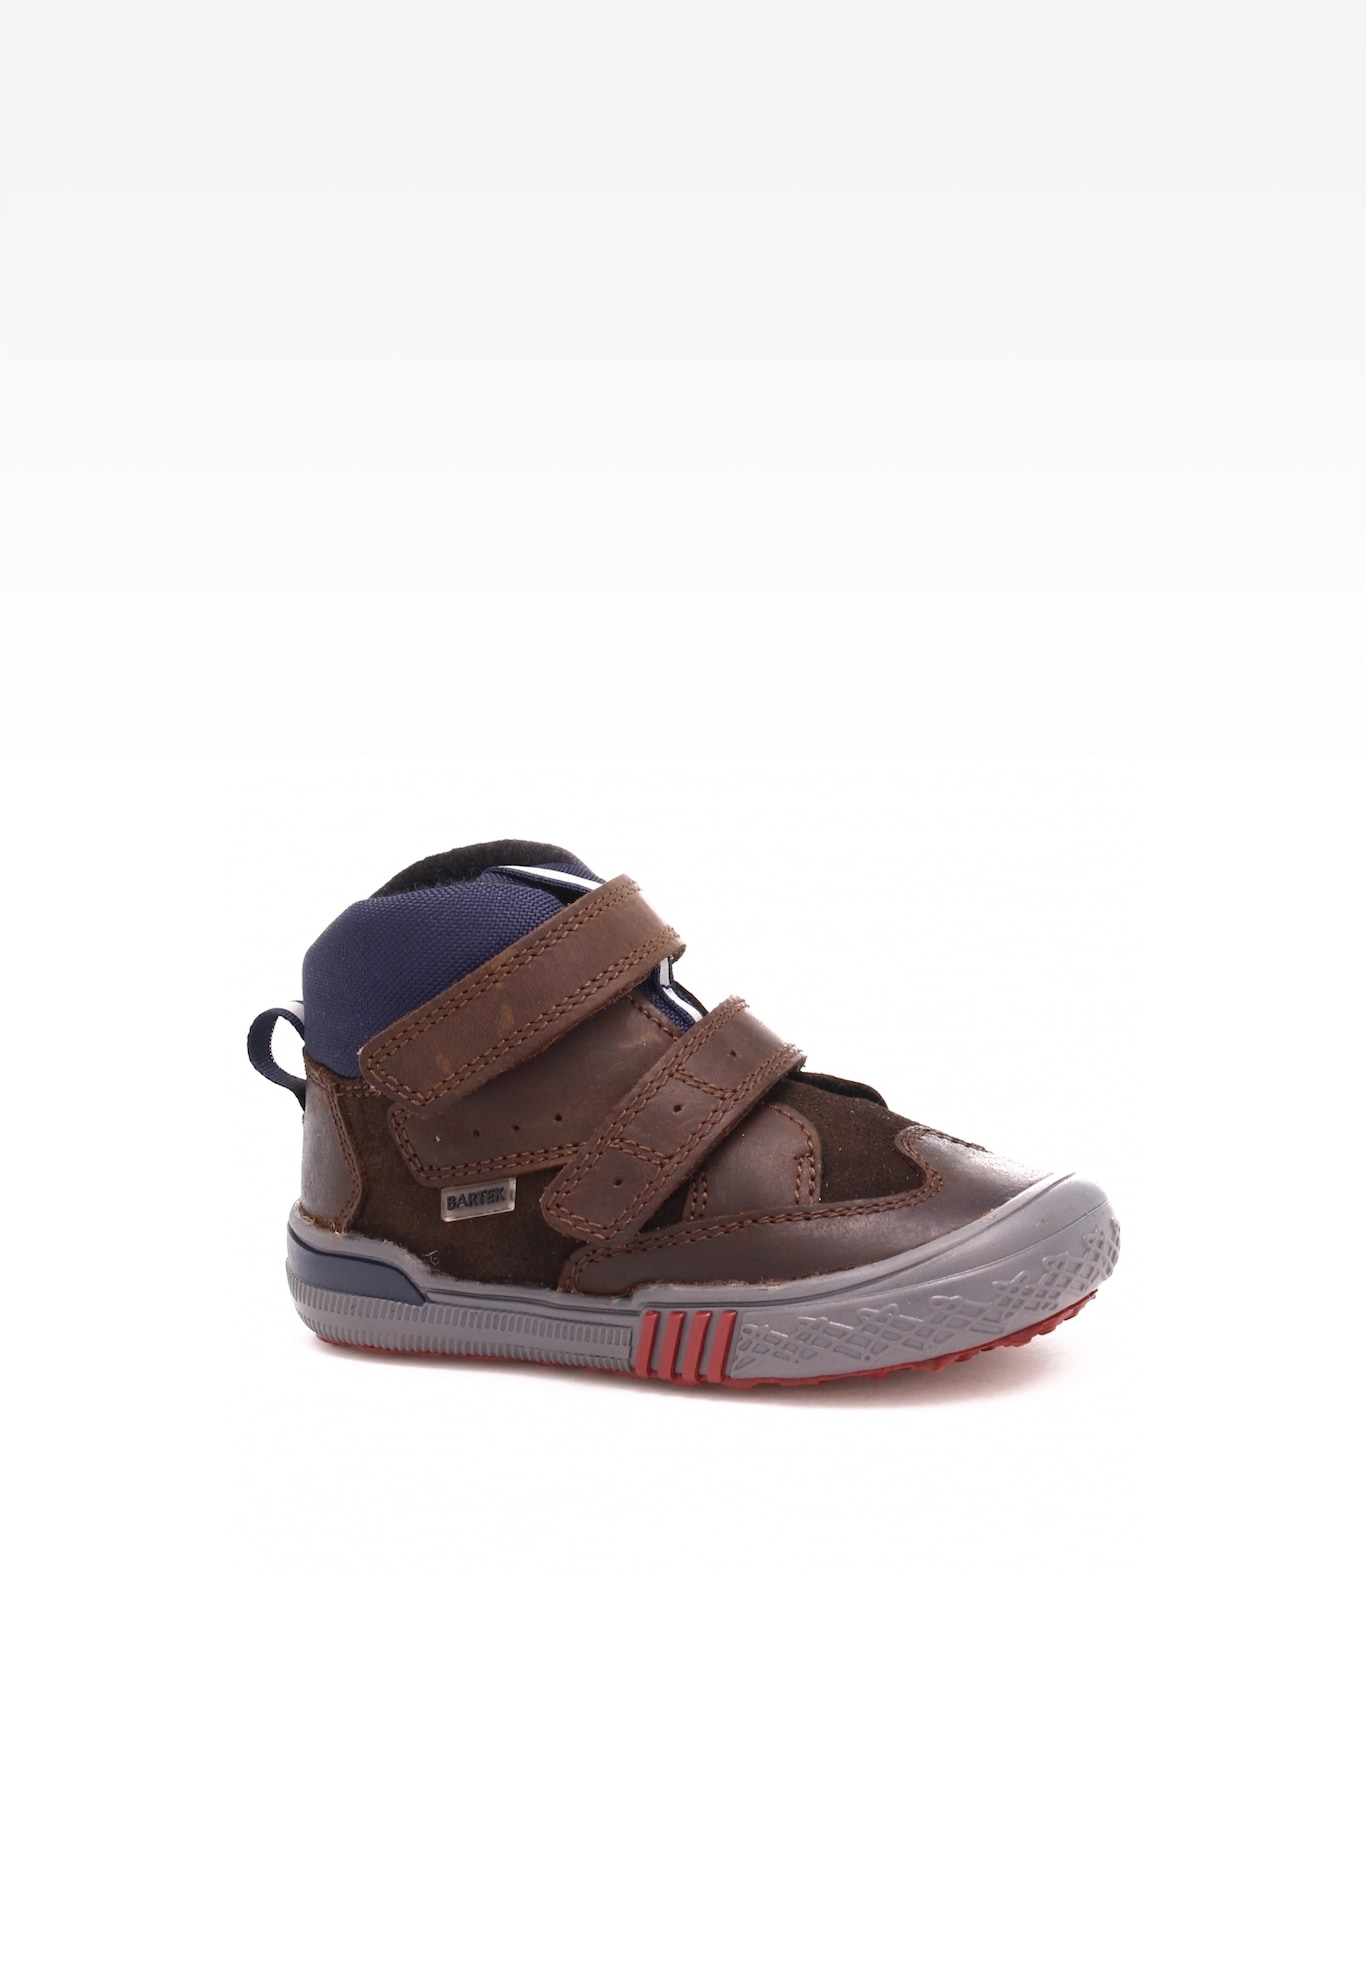 Sneakers BARTEK 21704/0P-RRA, dla chłopców, brązowy